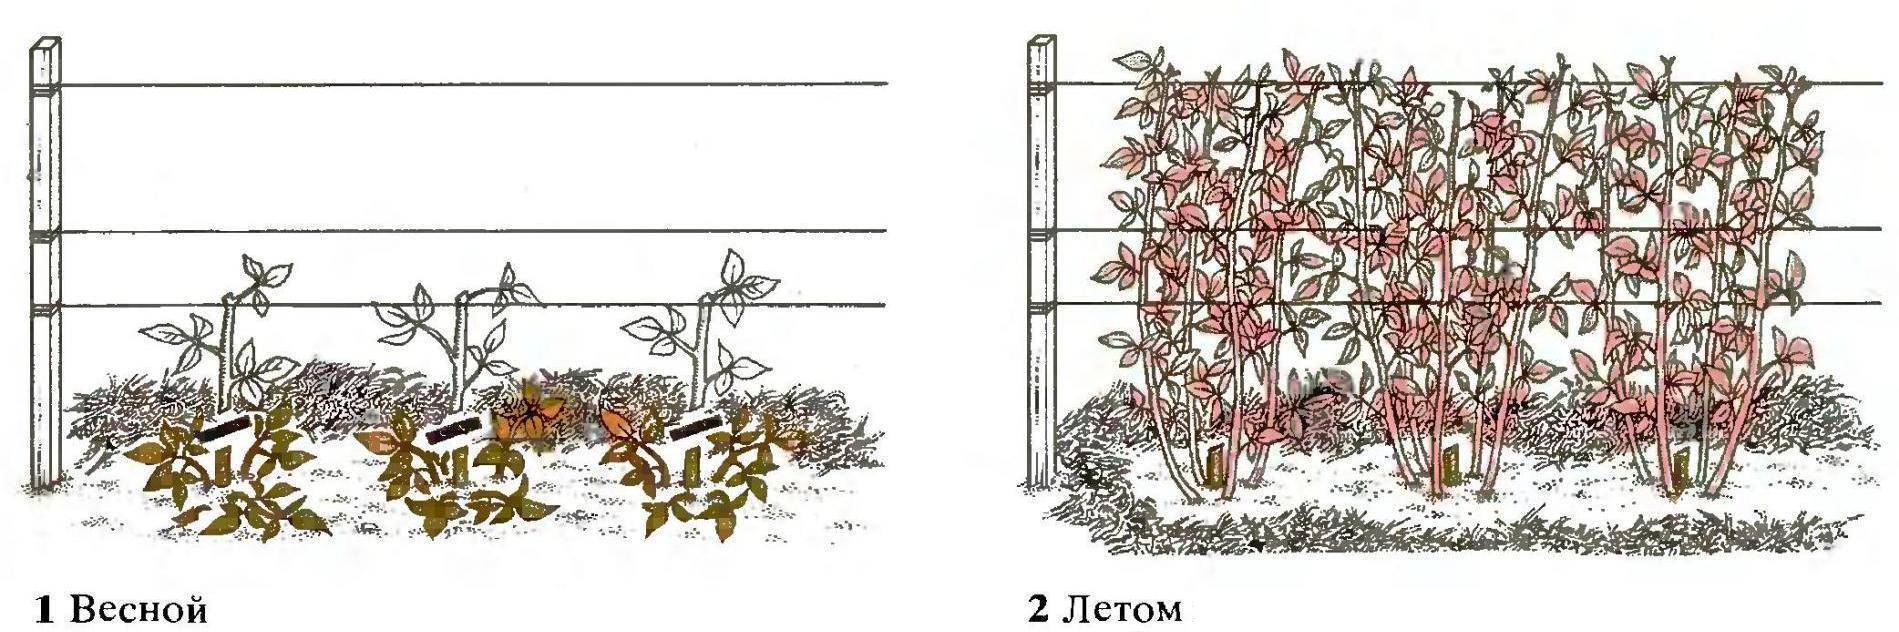 Как посадить малину осенью: пошаговое руководство с фото, видео